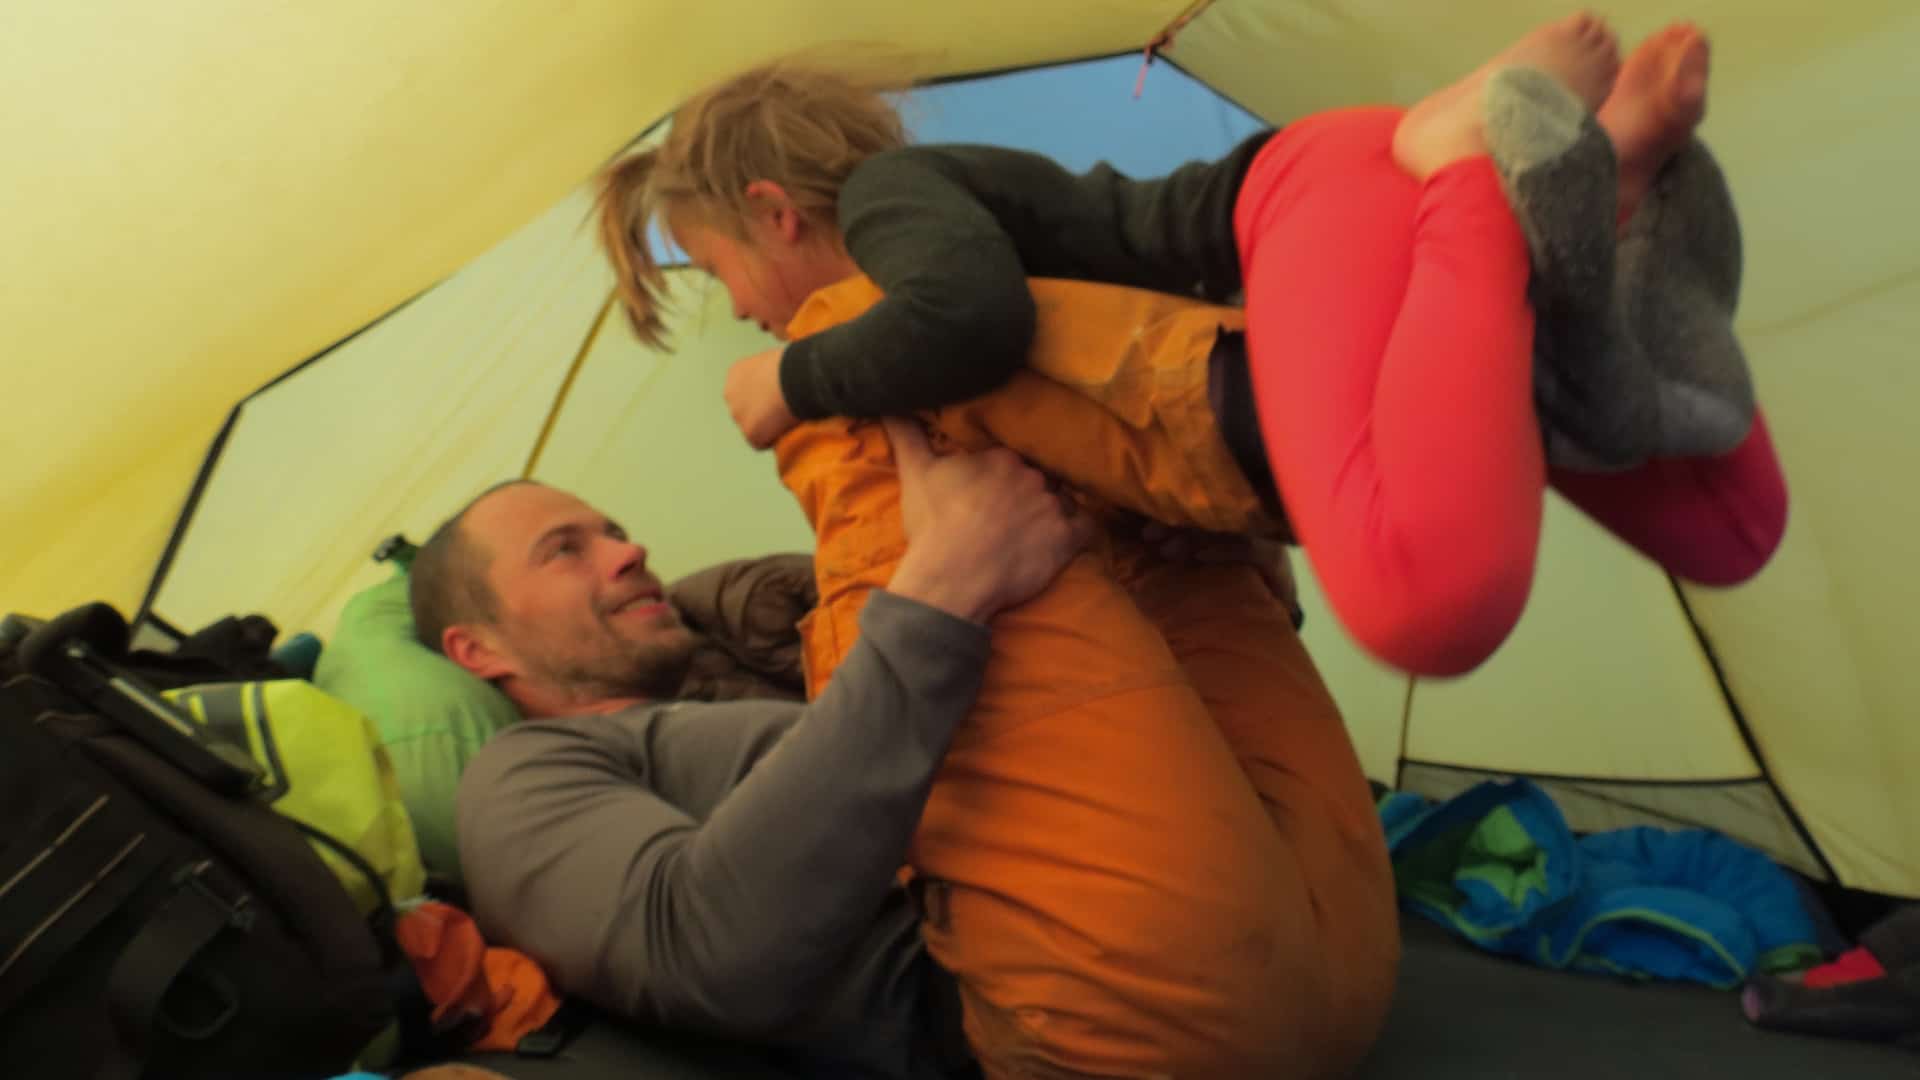 Far og datter i Vildmarken, Nordsverige, foredrag, Erik B. Jørgensen, Leger flyver i teltet